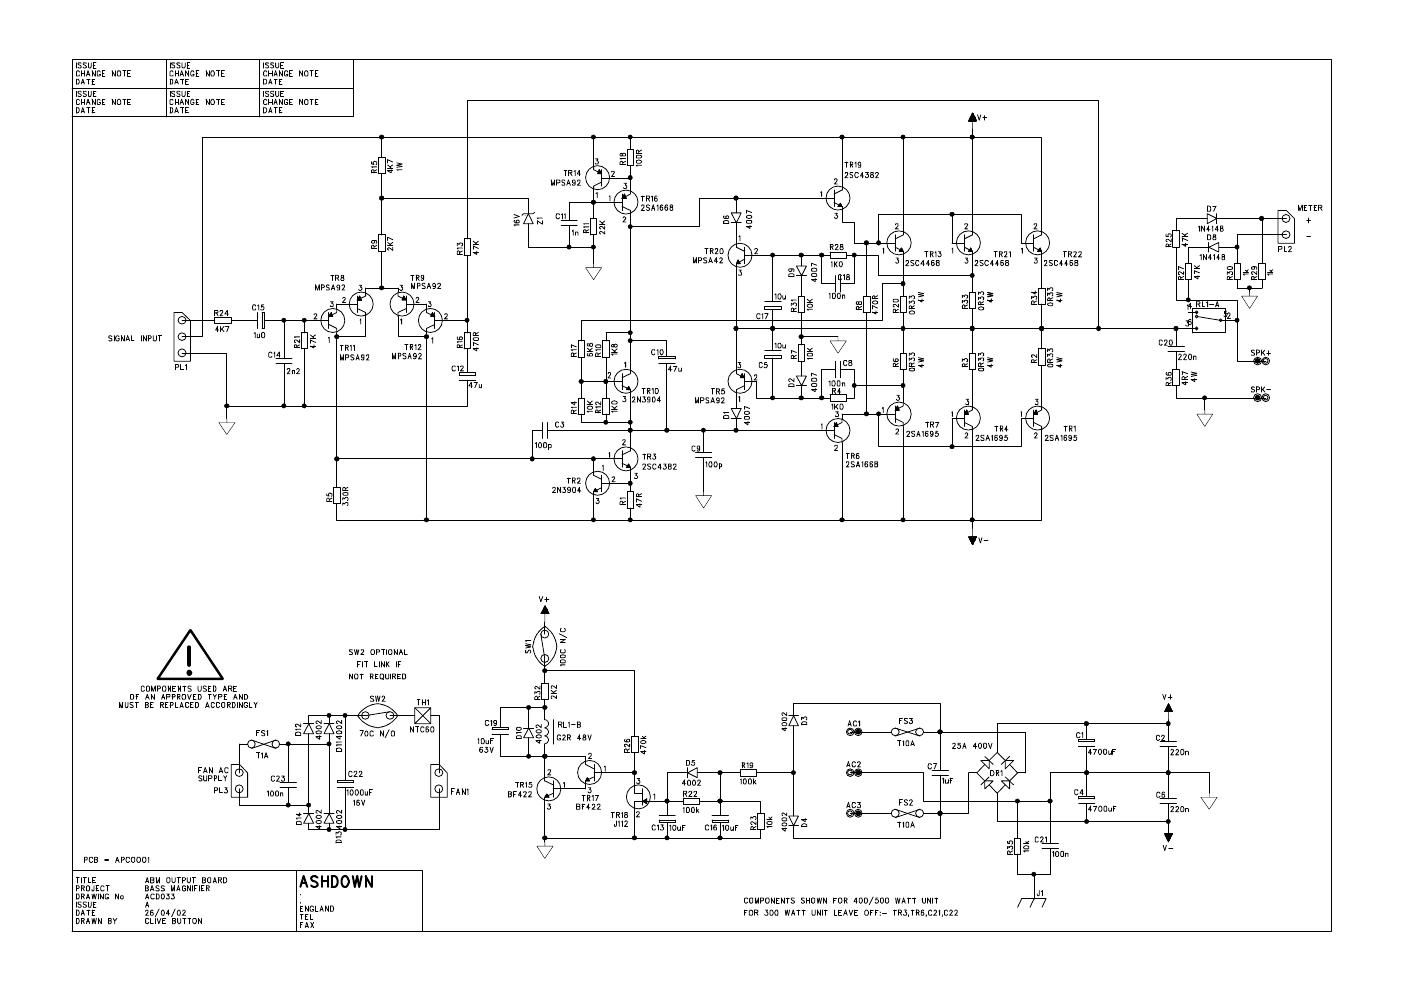 ashdown abm output board apc033xa schematic